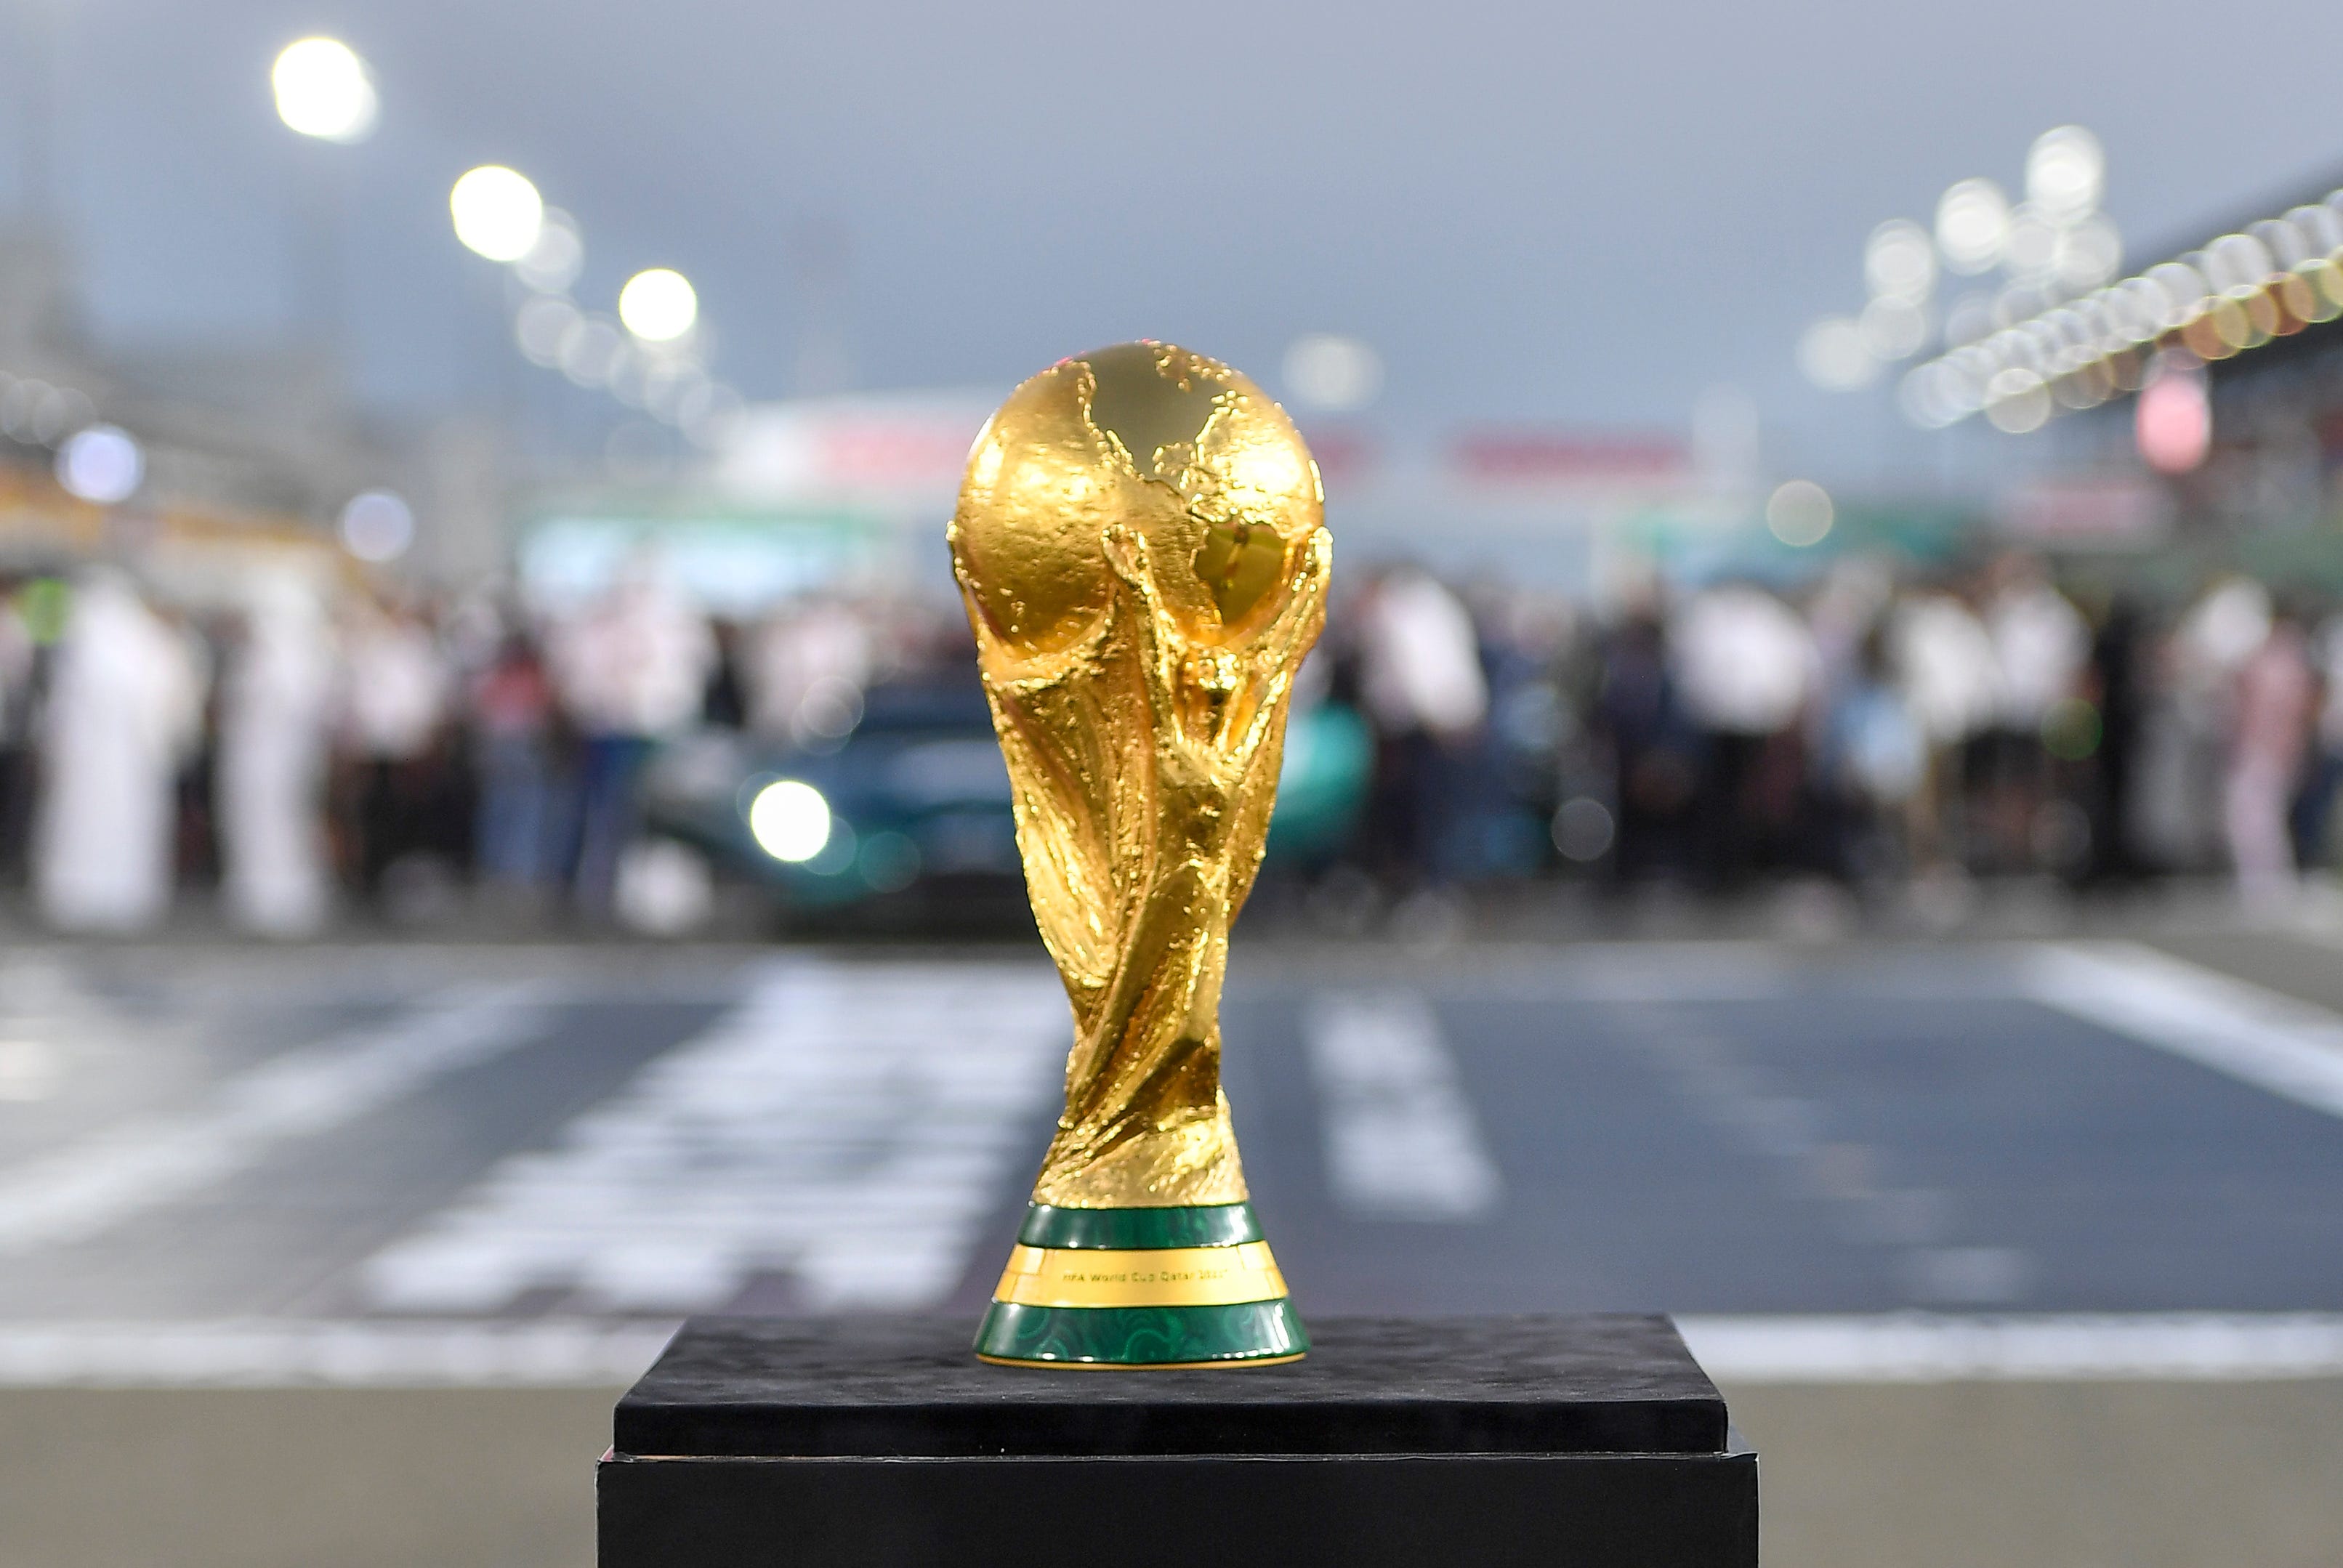 Copa do Mundo do Catar começa neste domingo - AcheiUSA